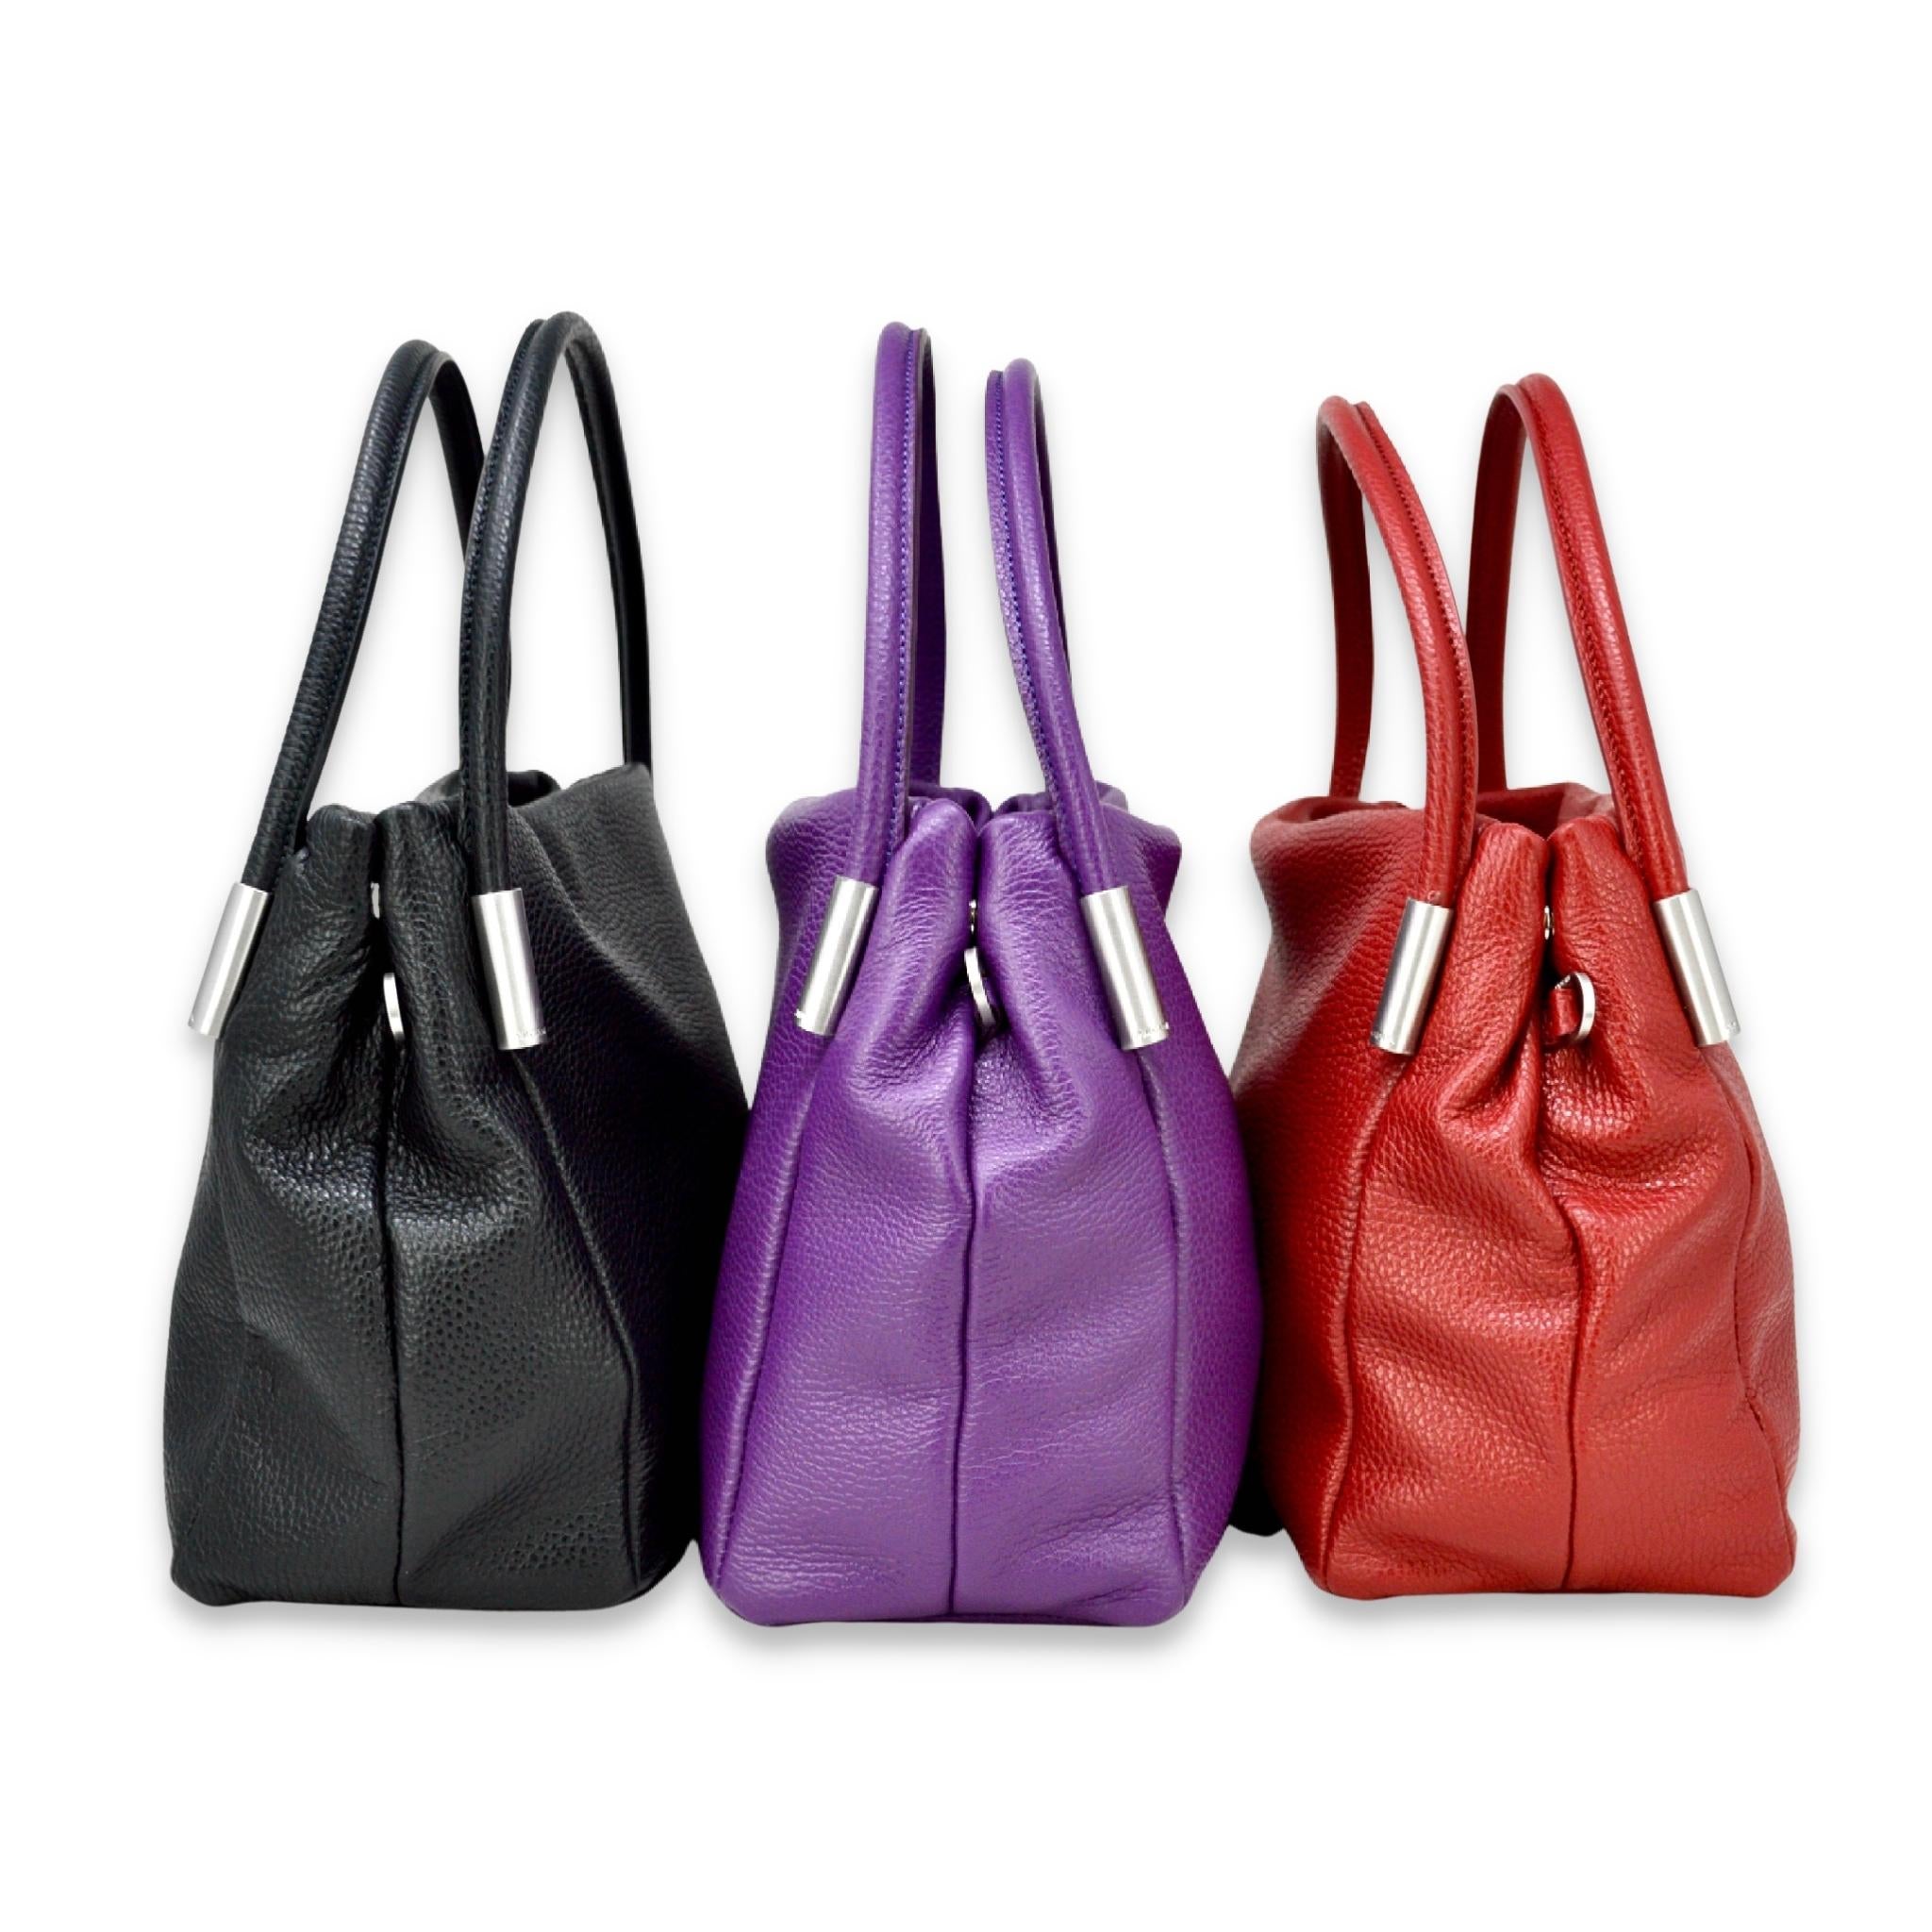 Women's handbags, Italian designer handbags